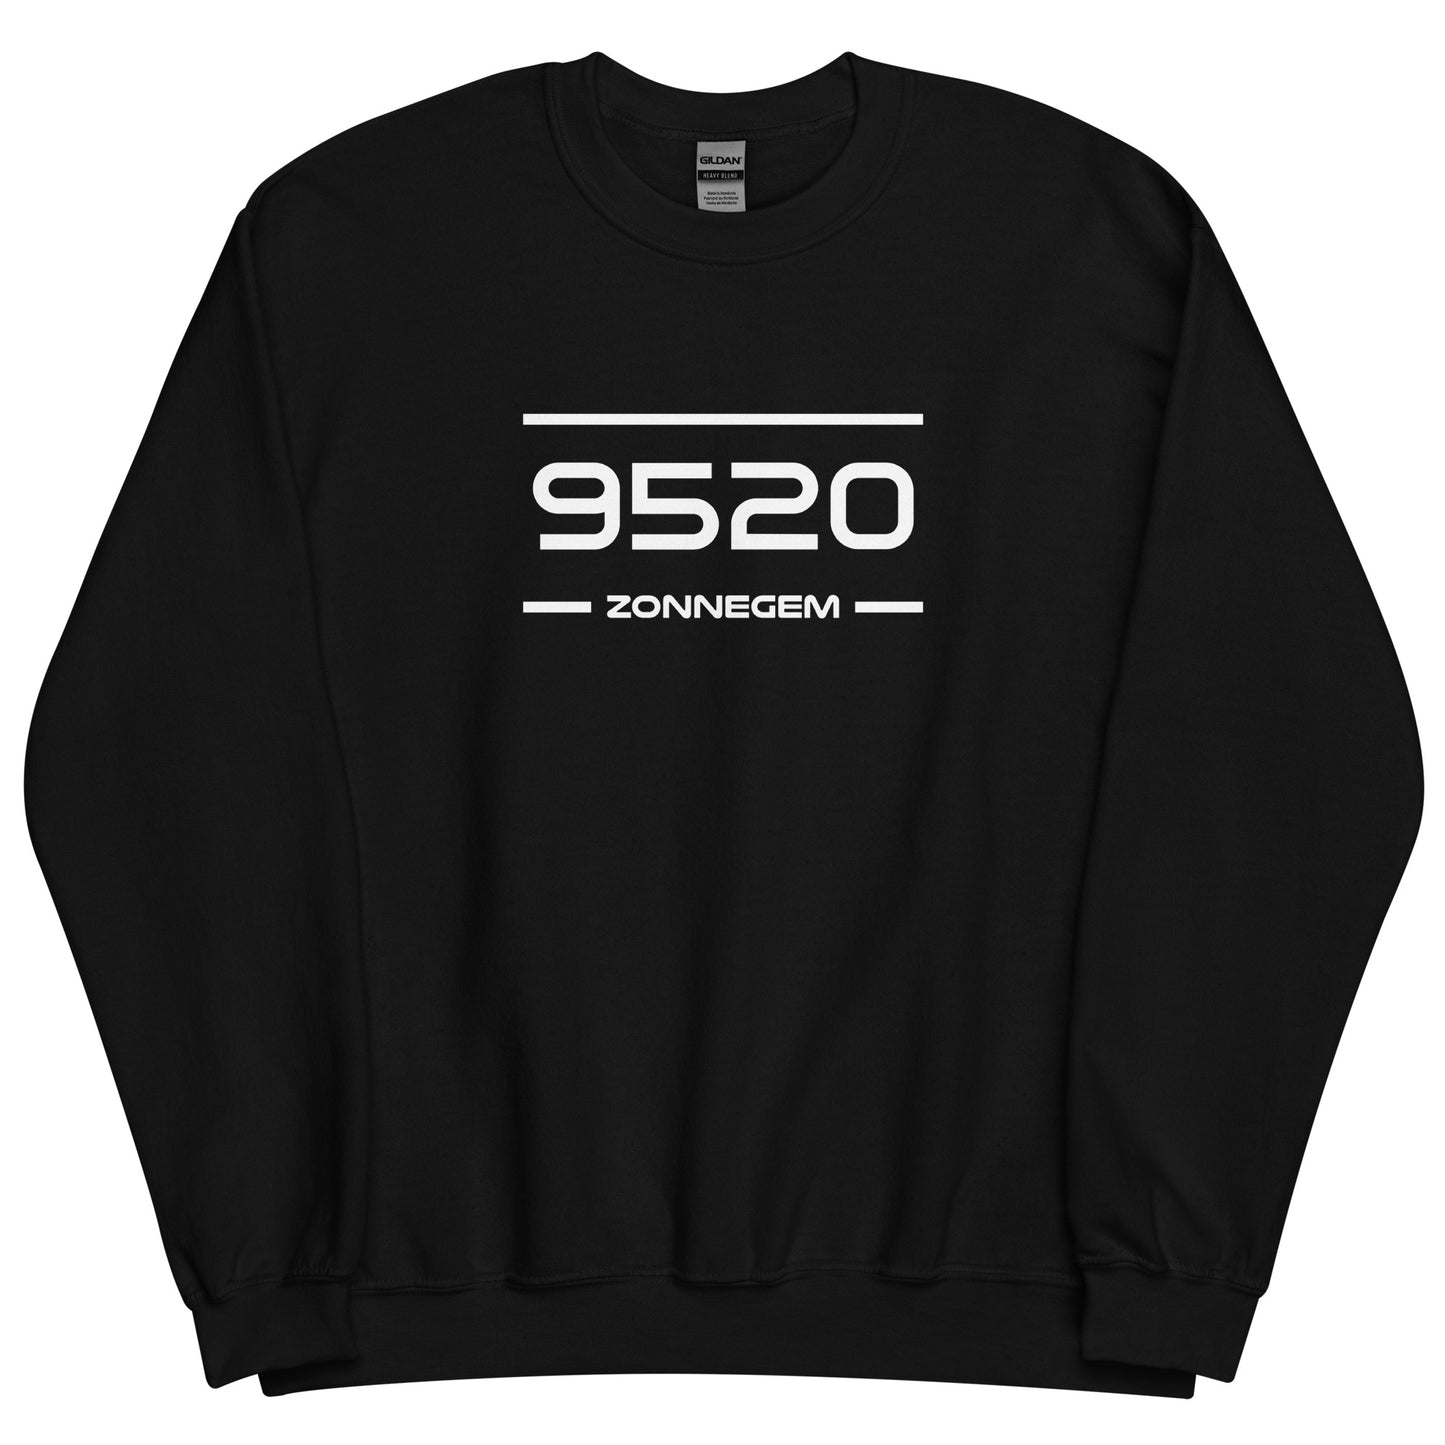 Sweater - 9520 - Zonnegem (M/V)